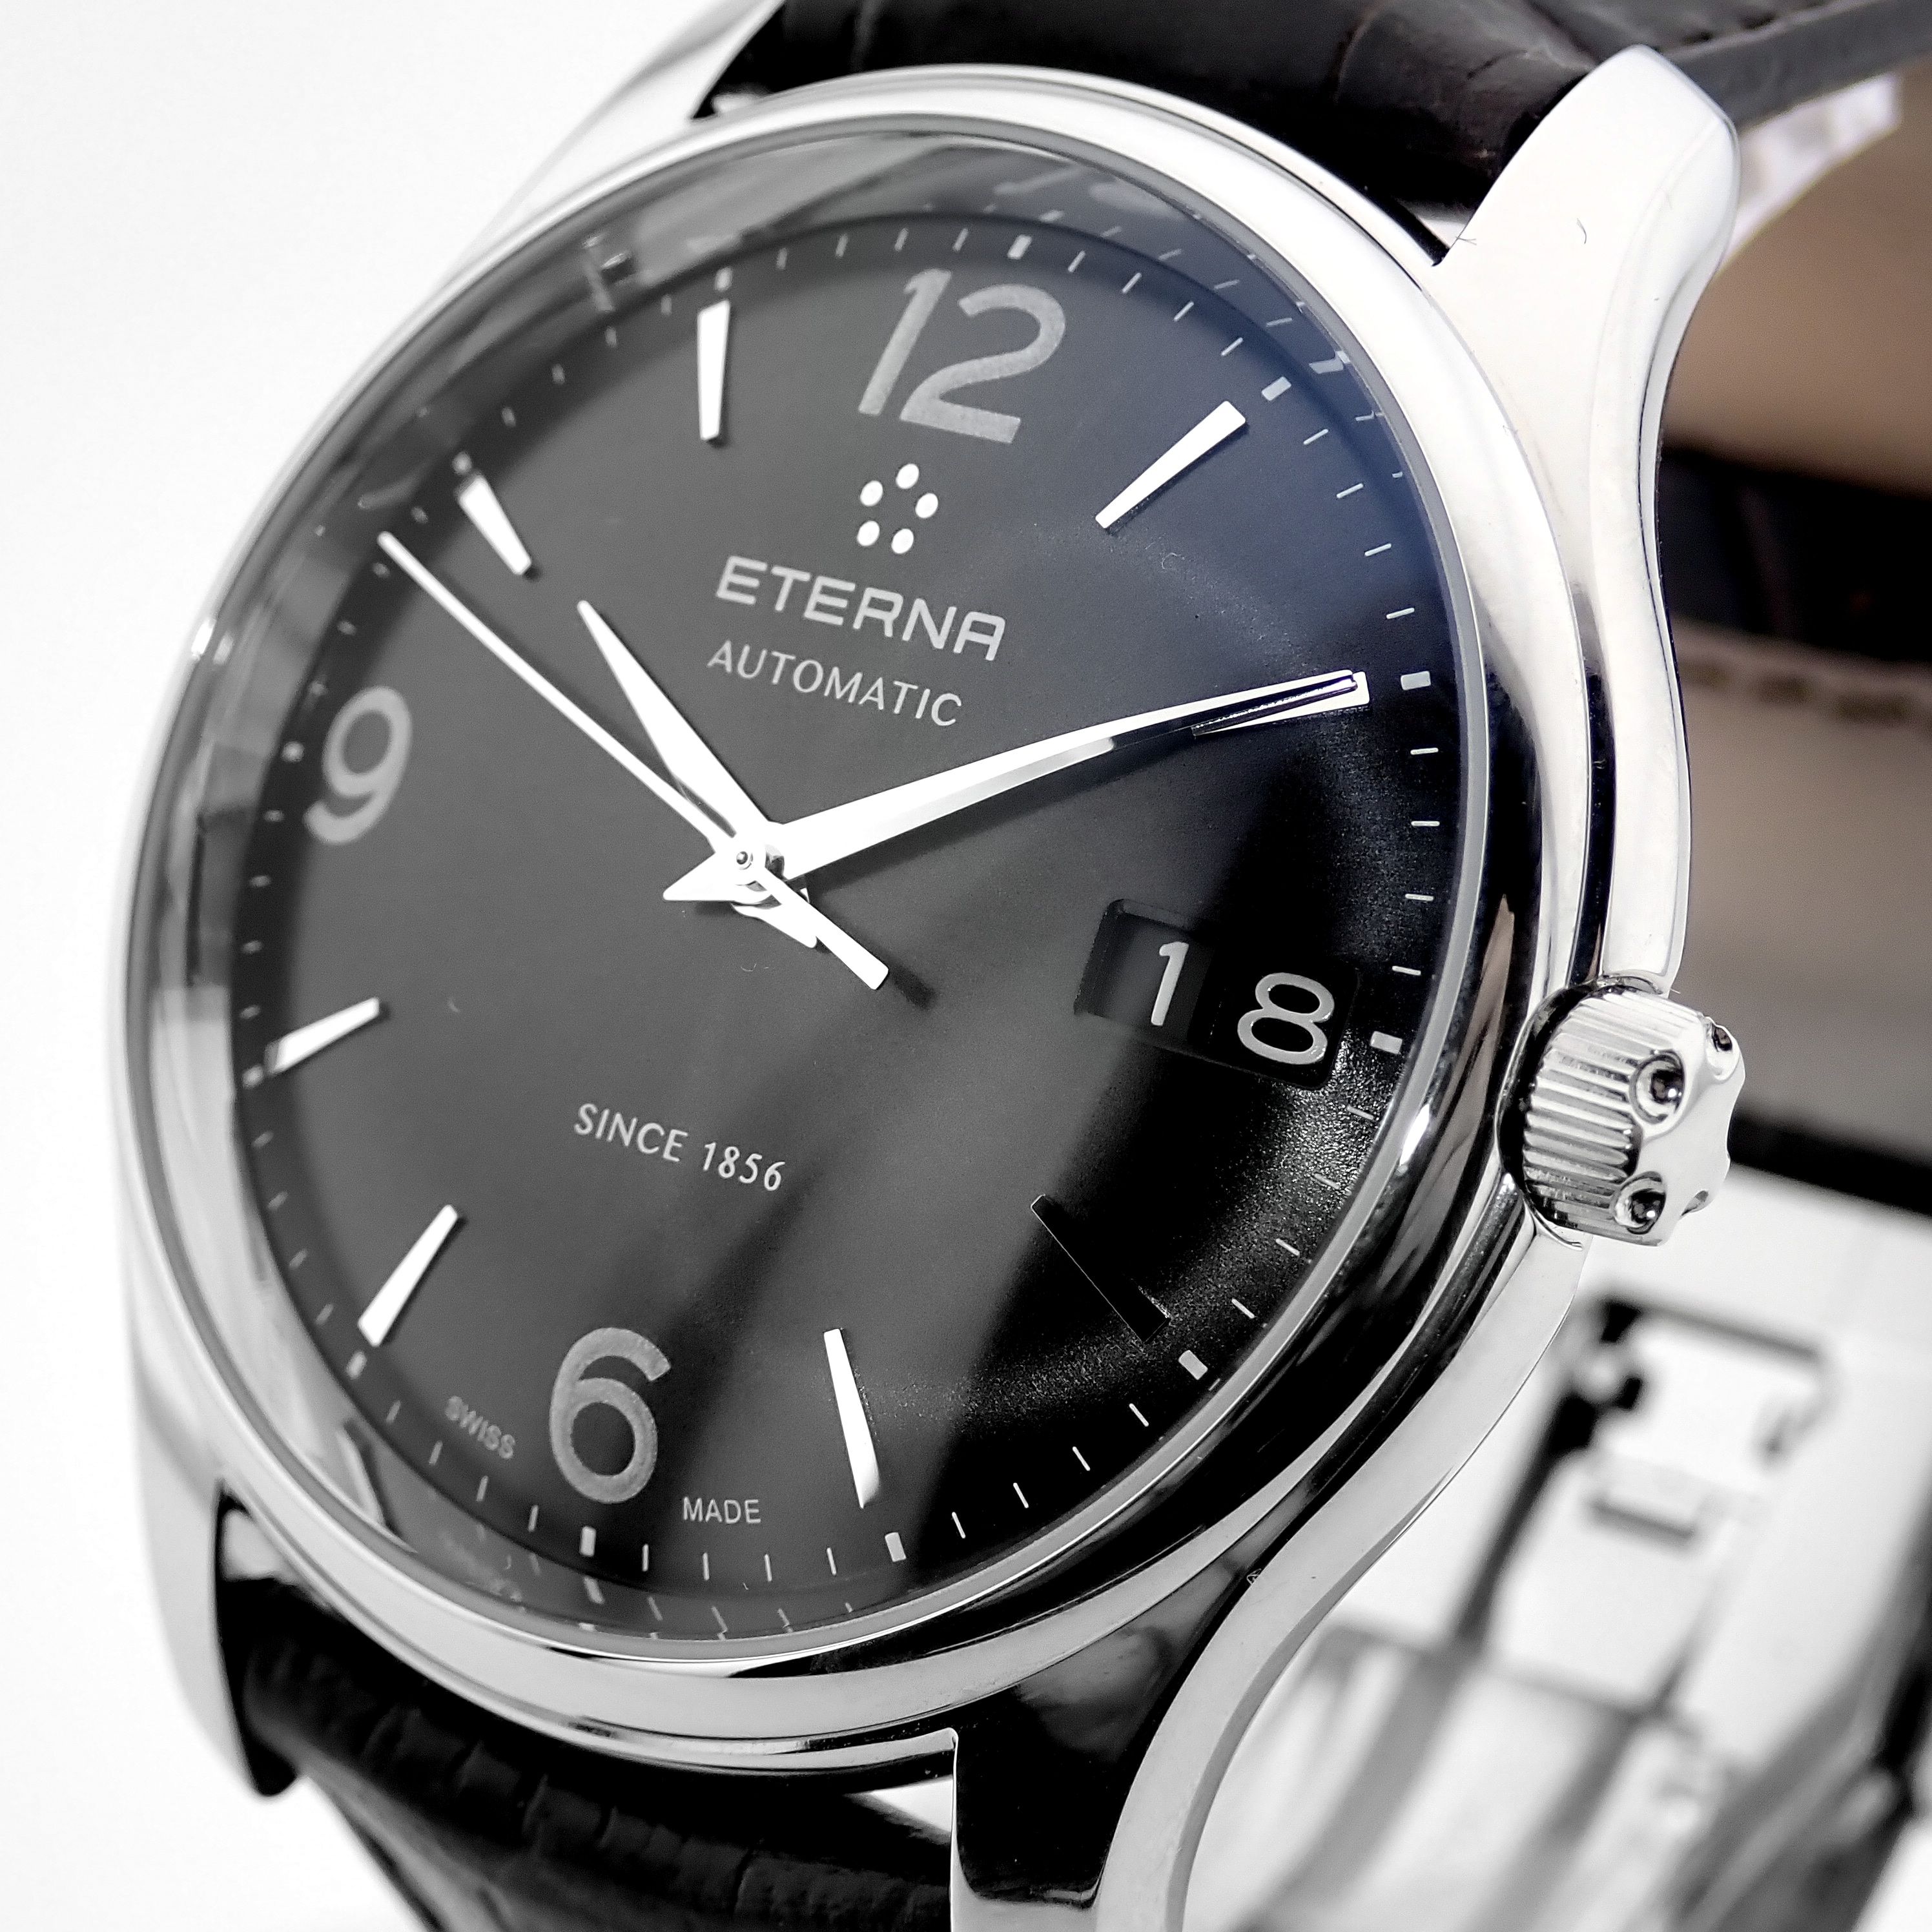 Eterna / Vaughan Big Date (Brand New) - Gentlemen's Steel Wrist Watch - Image 11 of 18